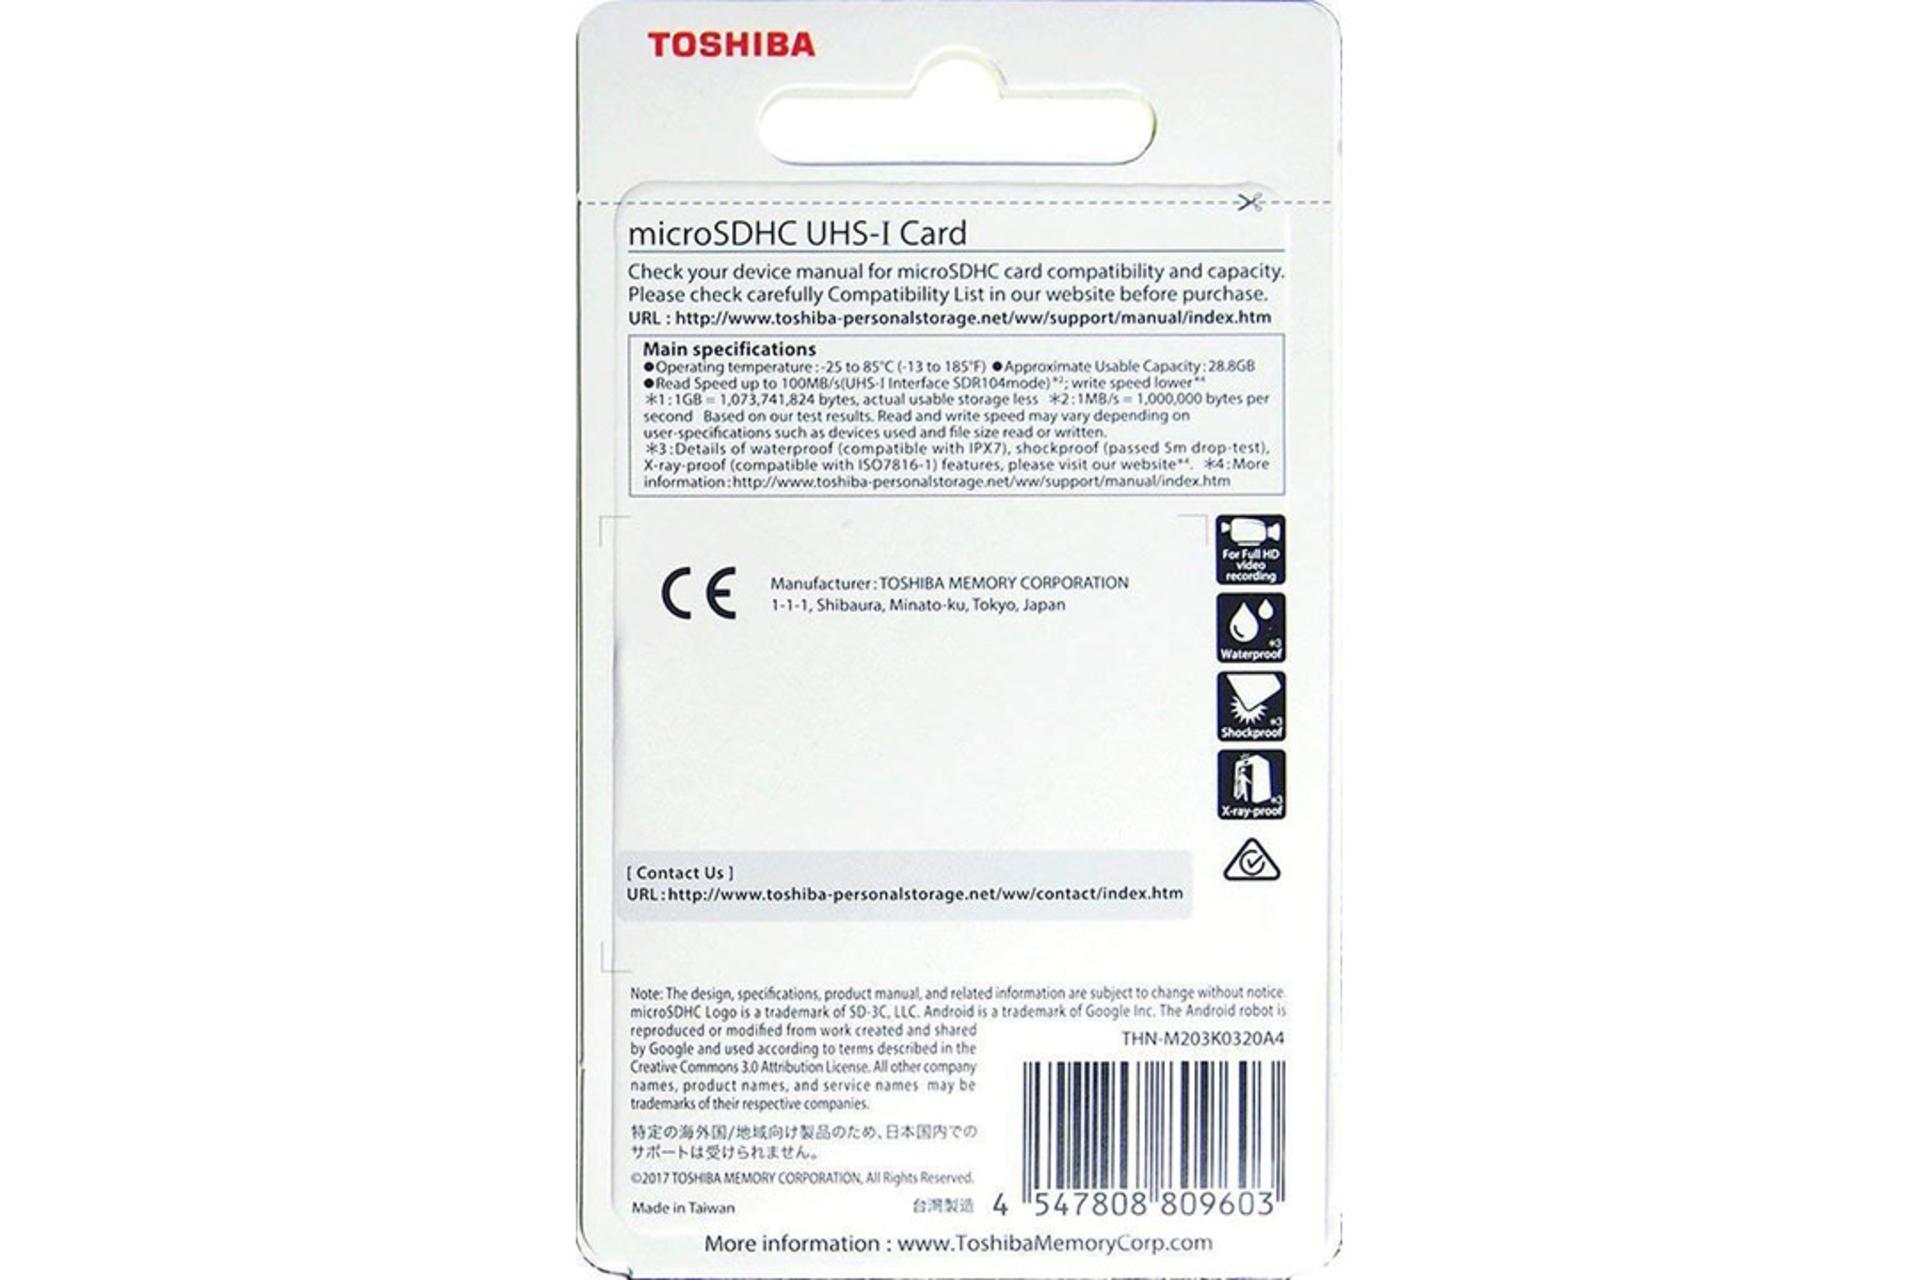 مرجع متخصصين ايران Toshiba M203 microSDHC Class 10 UHS-I 16GB